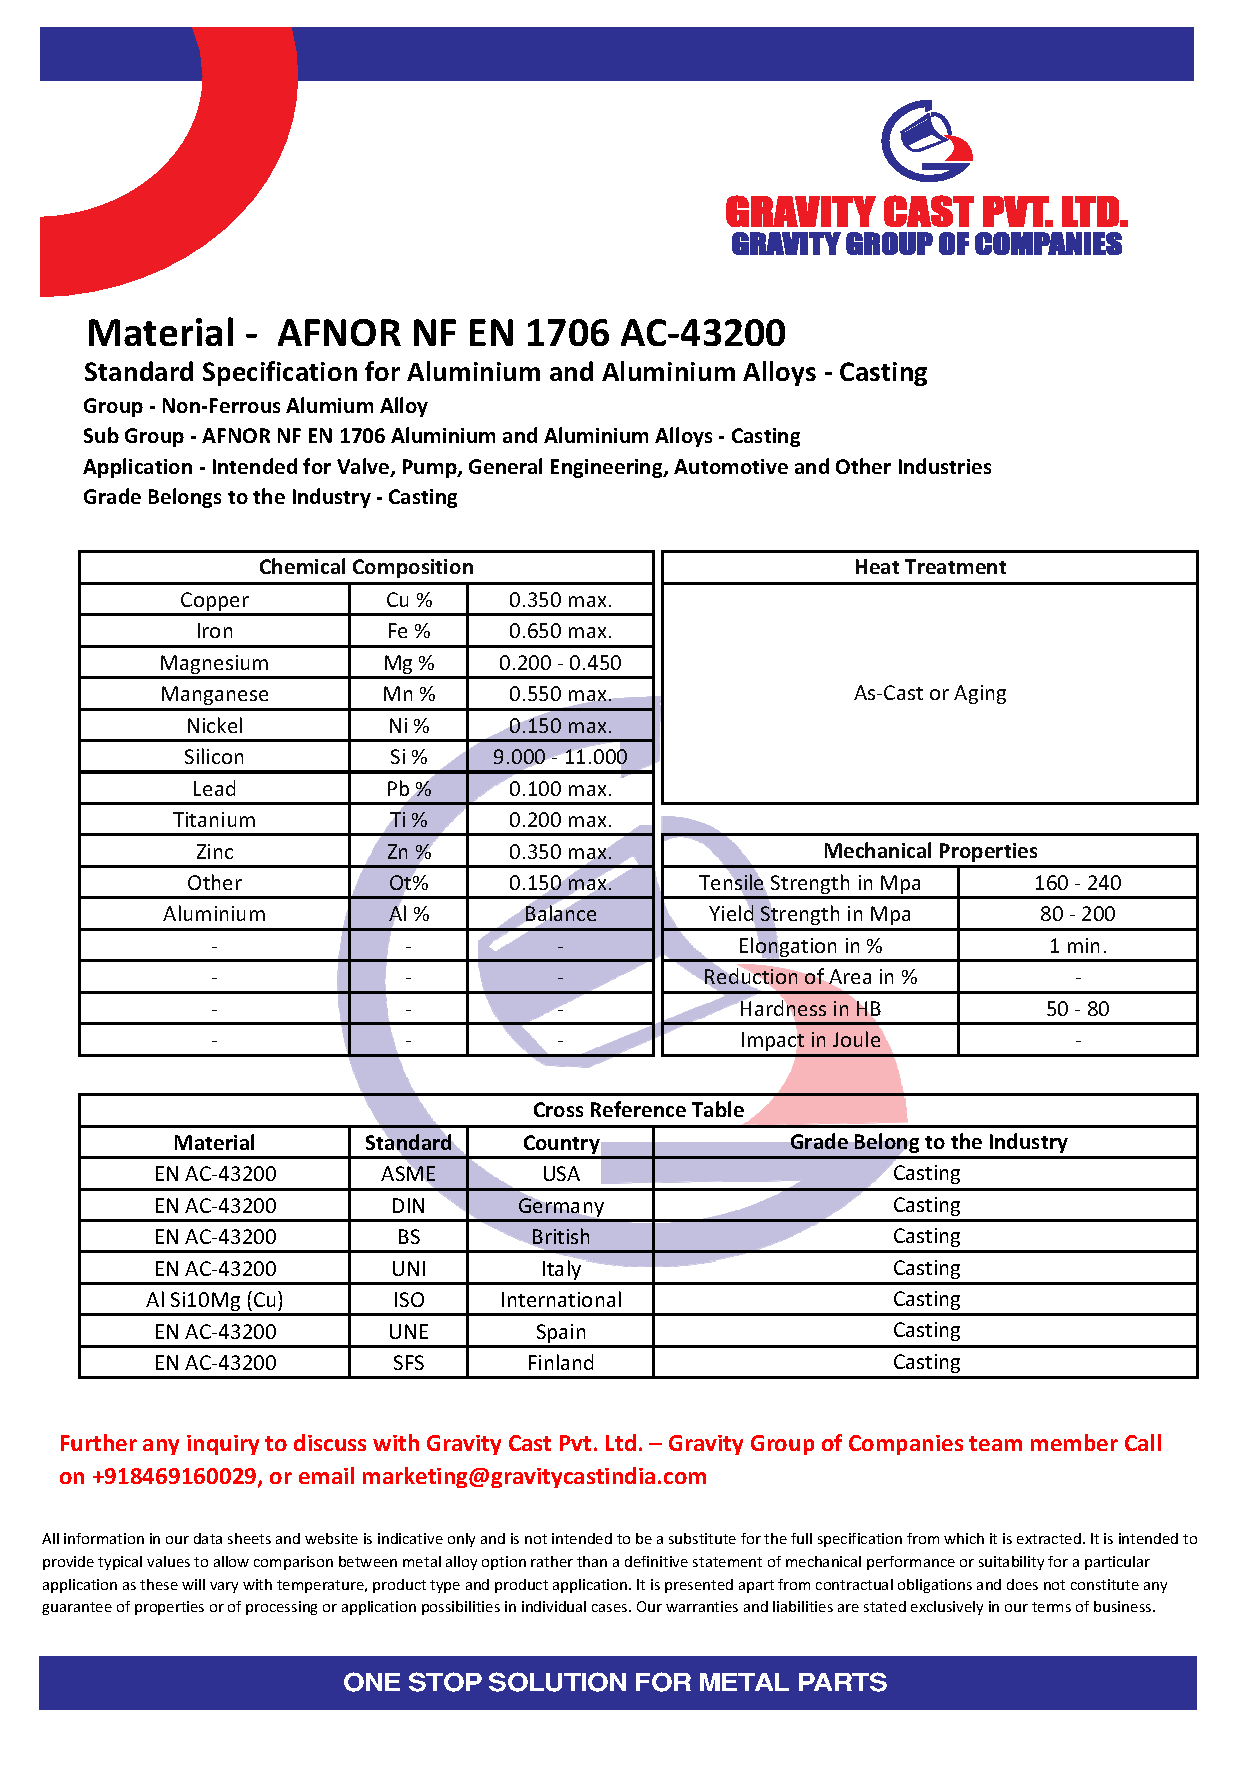 AFNOR NF EN 1706 AC-43200.pdf